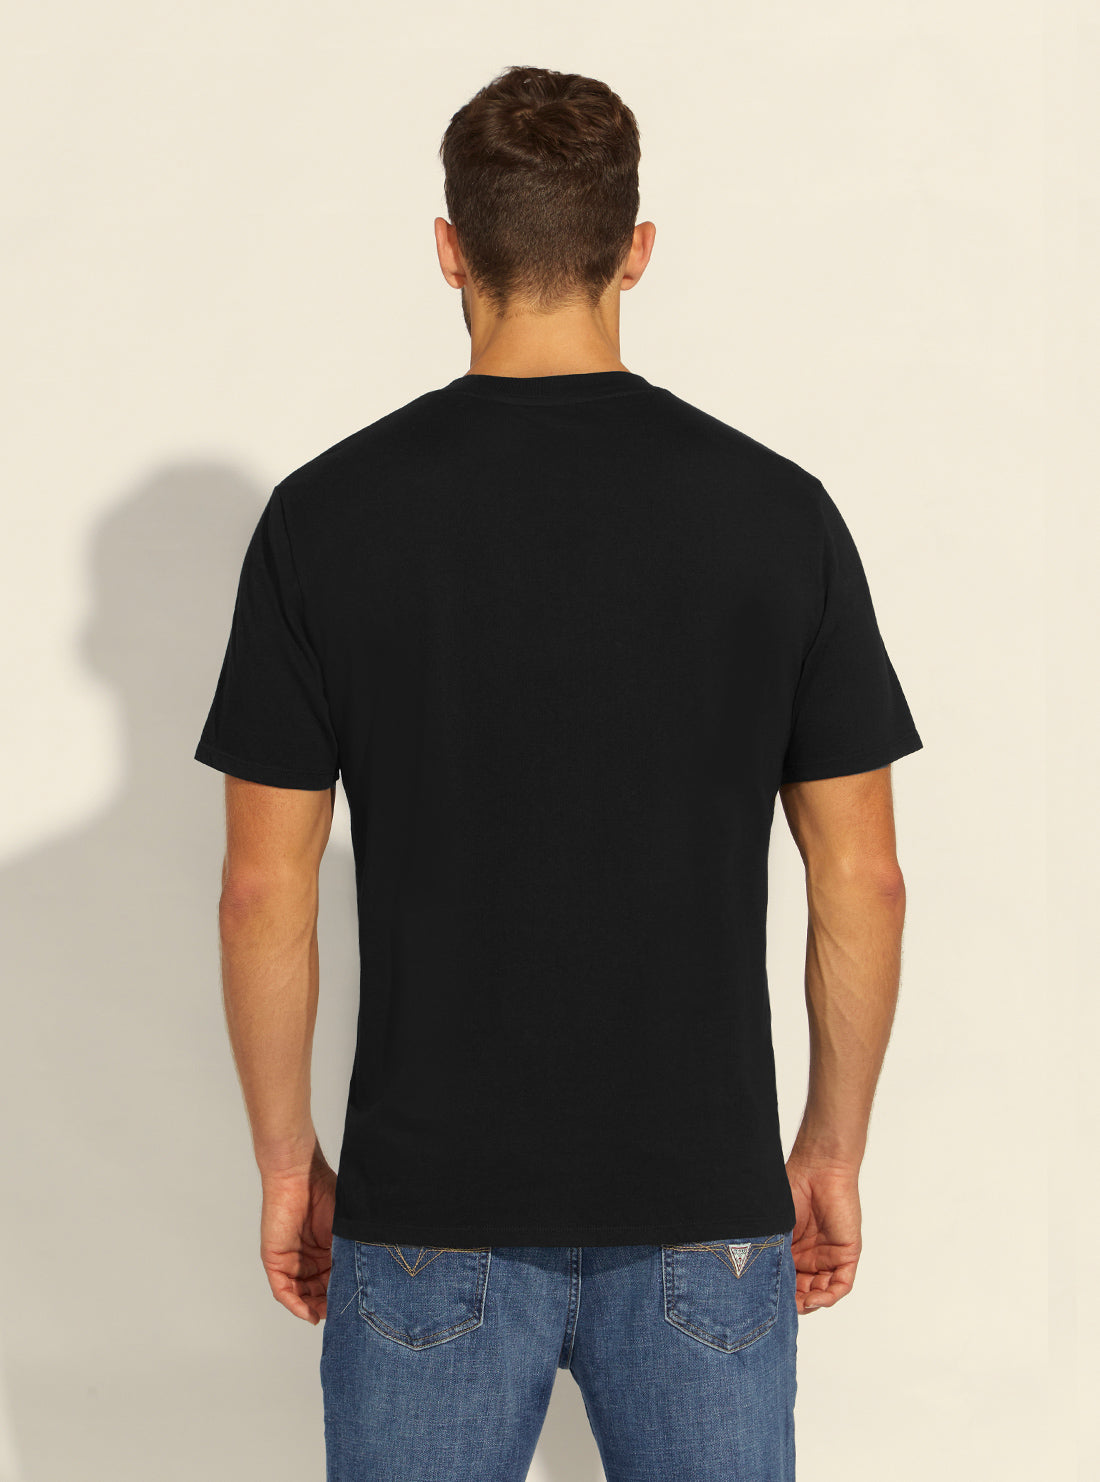 GUESS Mens GUESS Originals Black Pocket Label T-Shirt M1BI43K9XF1 Back View